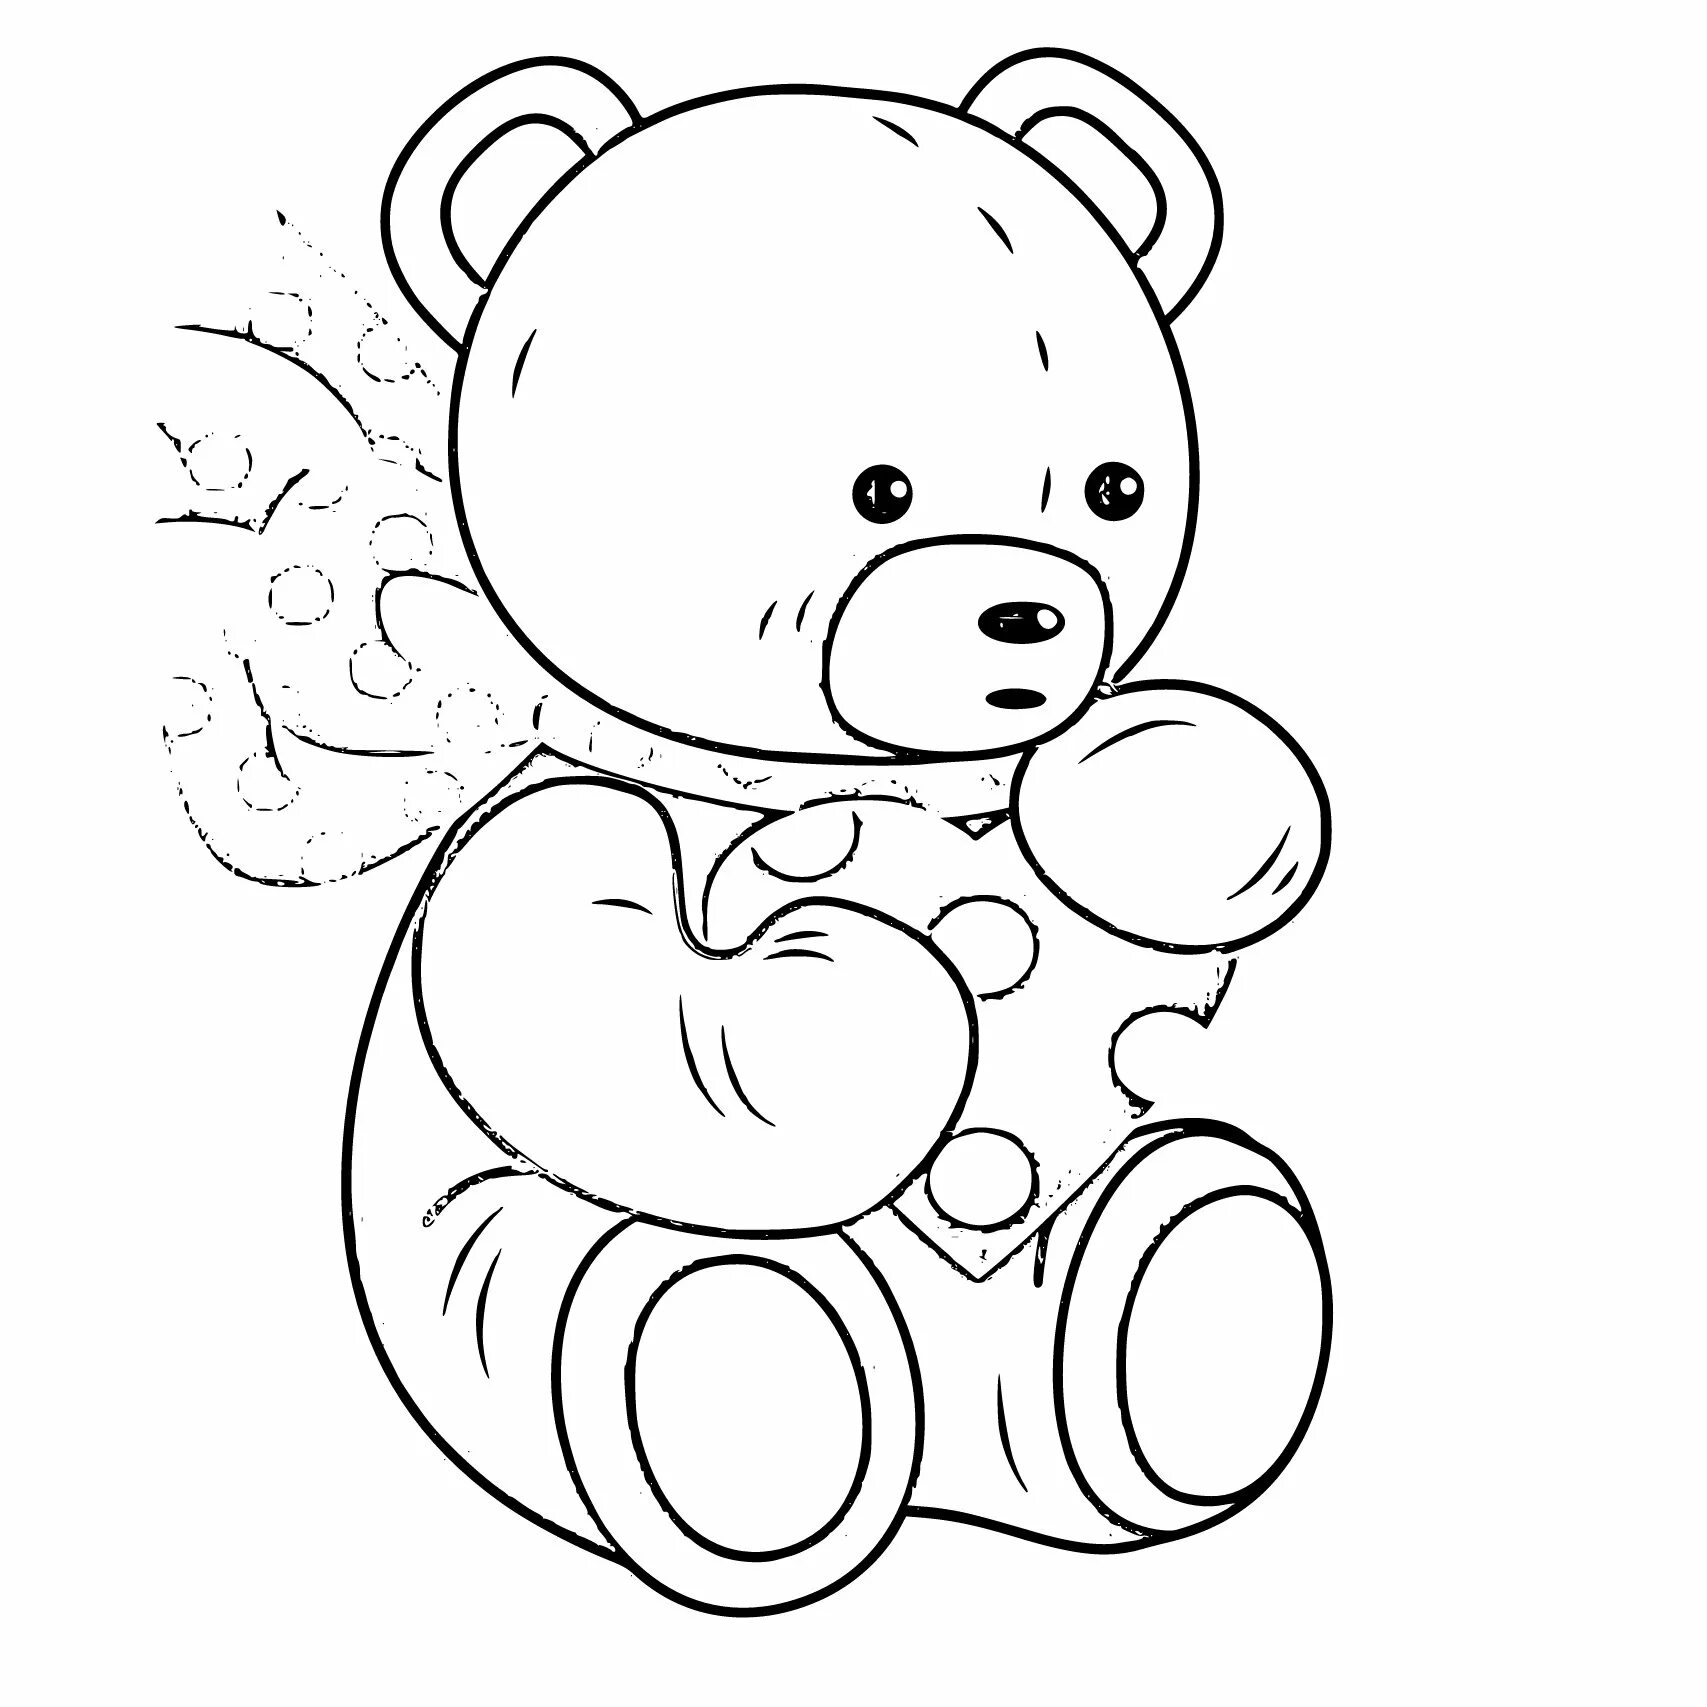 Раскраска. Медвежонок. Раскраска "мишки". Медведь раскраска для детей. Плюшевый мишка раскраска.